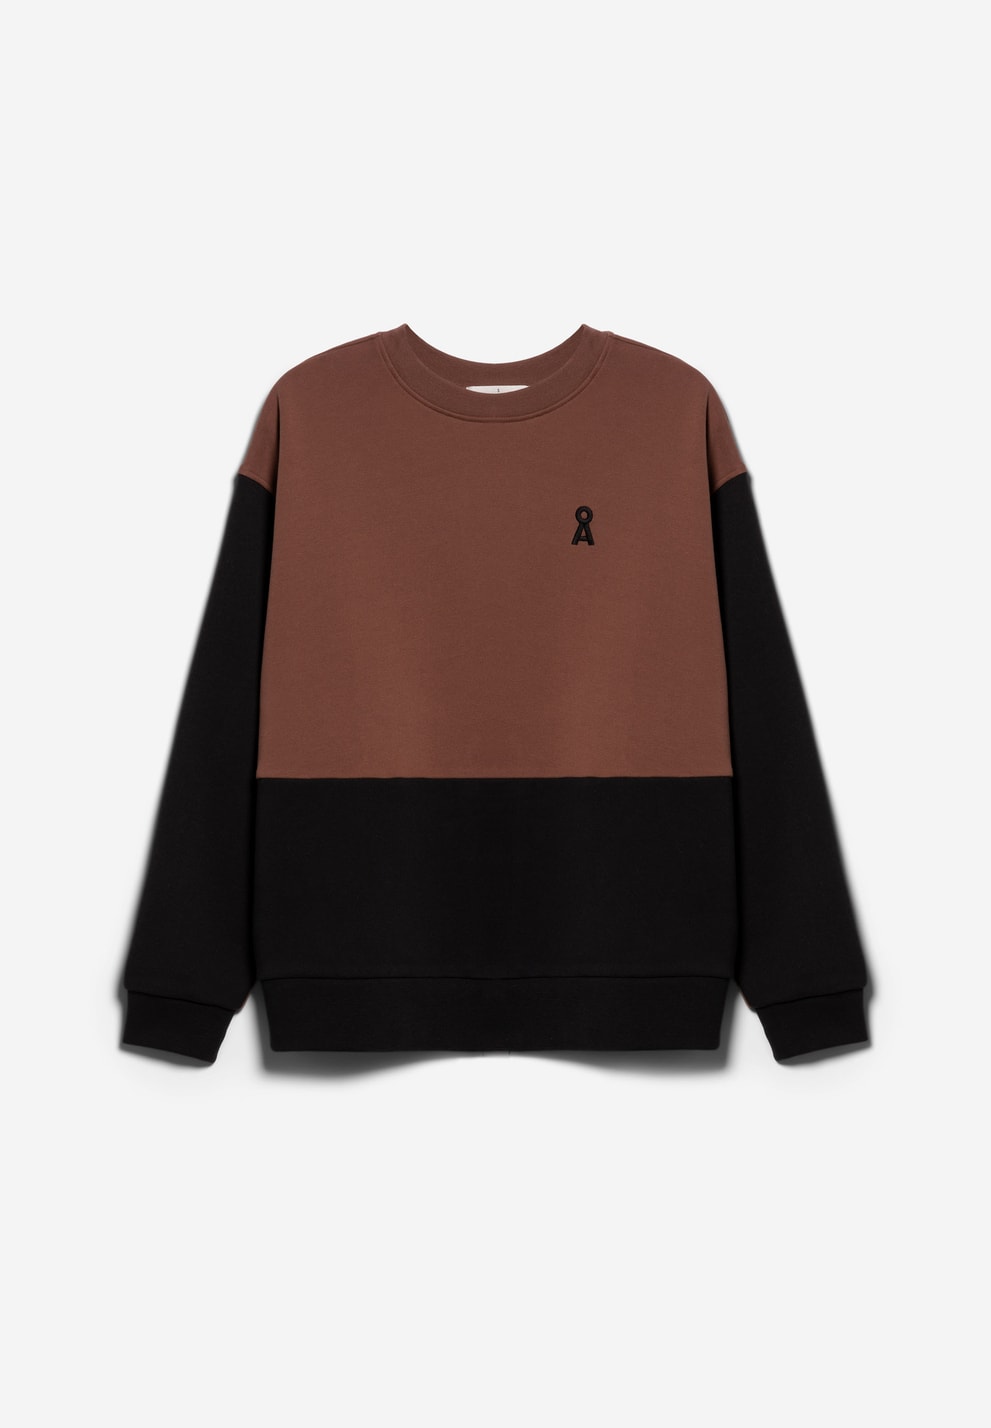 Sweatshirt oversized AARIN PATCHED - deep brown-black - ARMEDANGELS